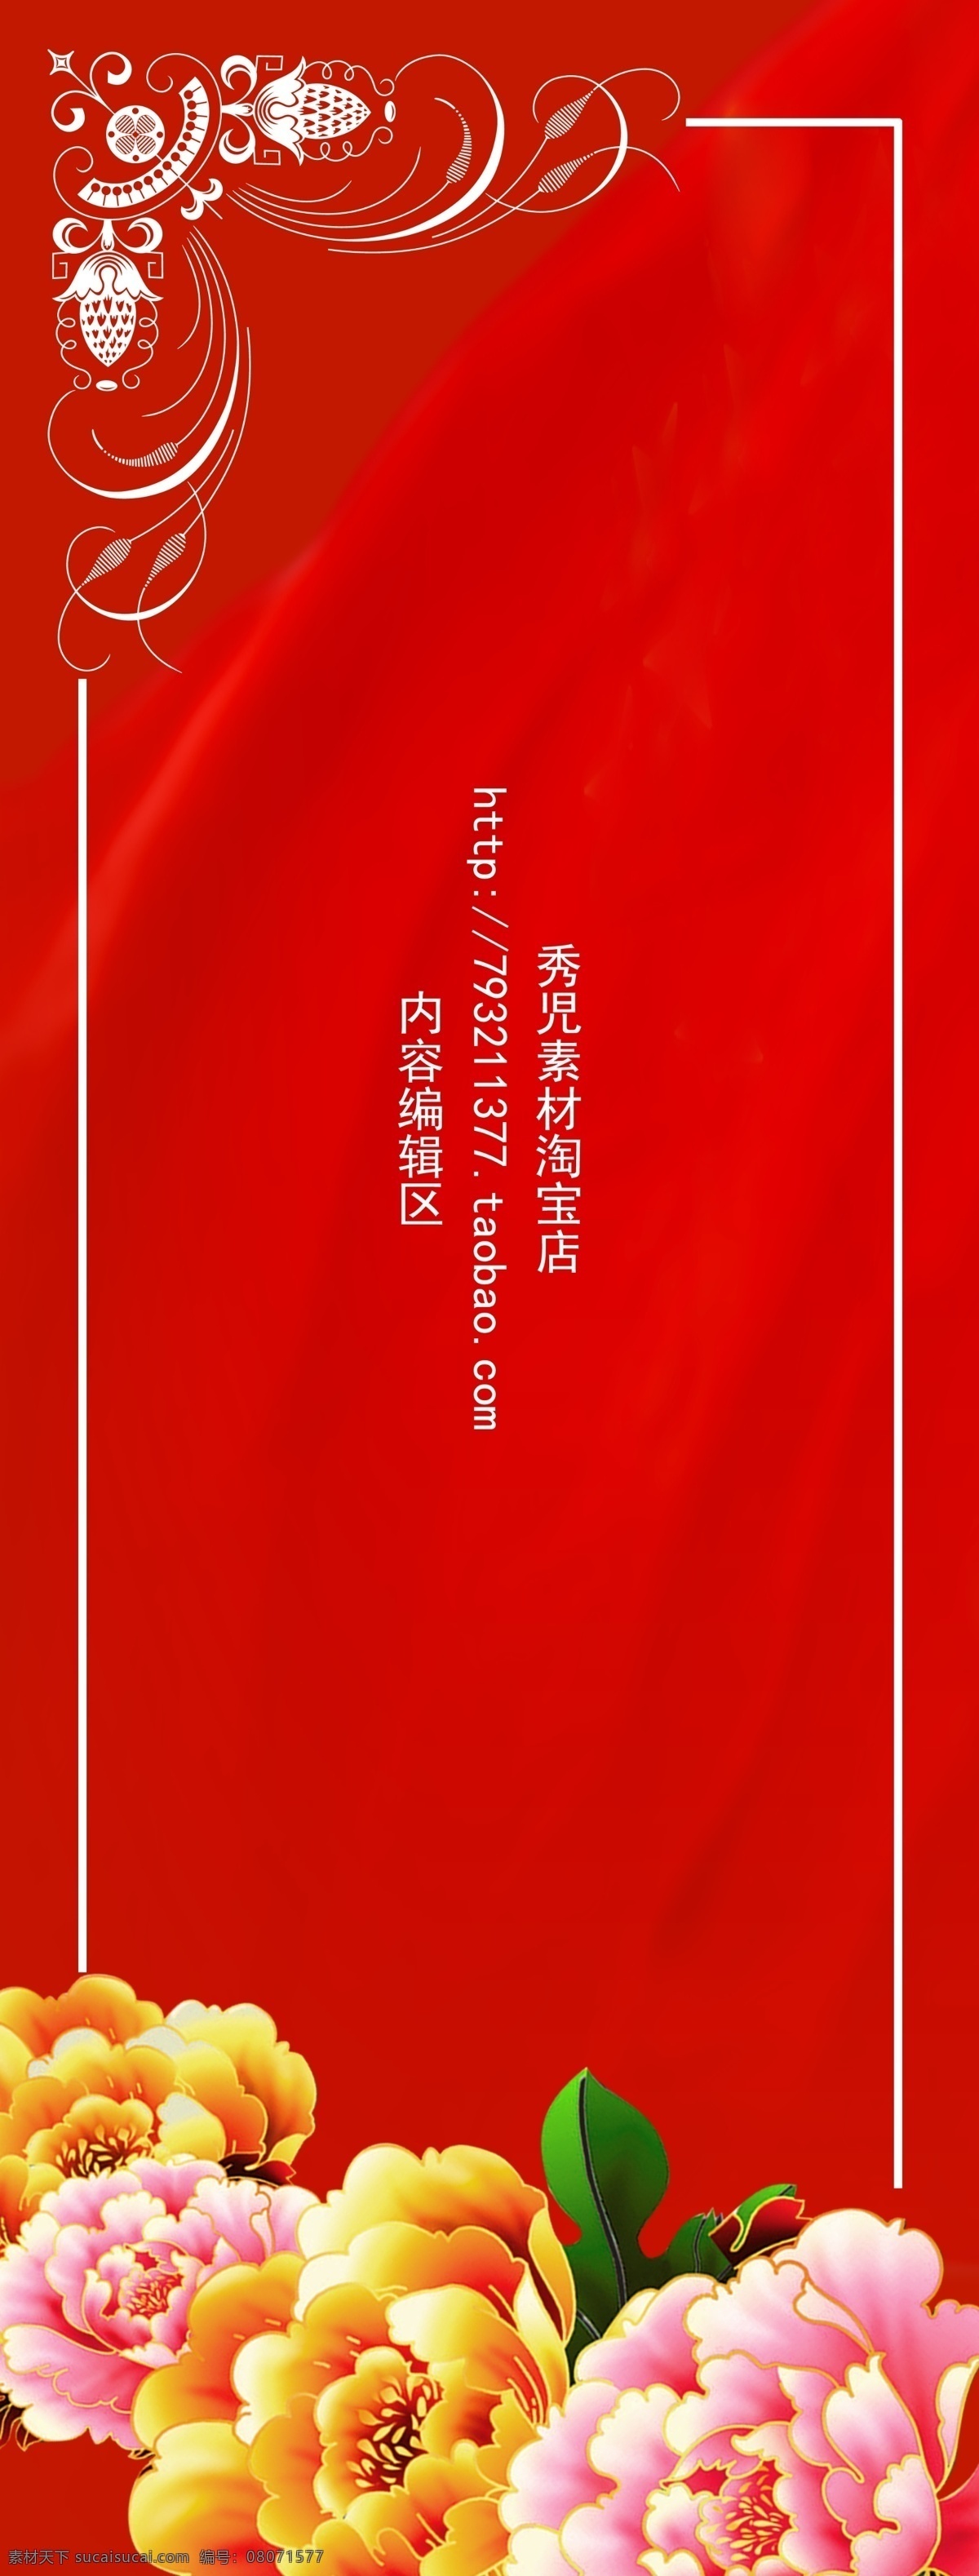 精美 红色 背景 展架 模板 画面 红色背景 精美红色 牡丹 精美牡丹素材 牡丹素材 边框 展架设计 x展架 精美展架 精美展架设计 展架海报 展架设计素材